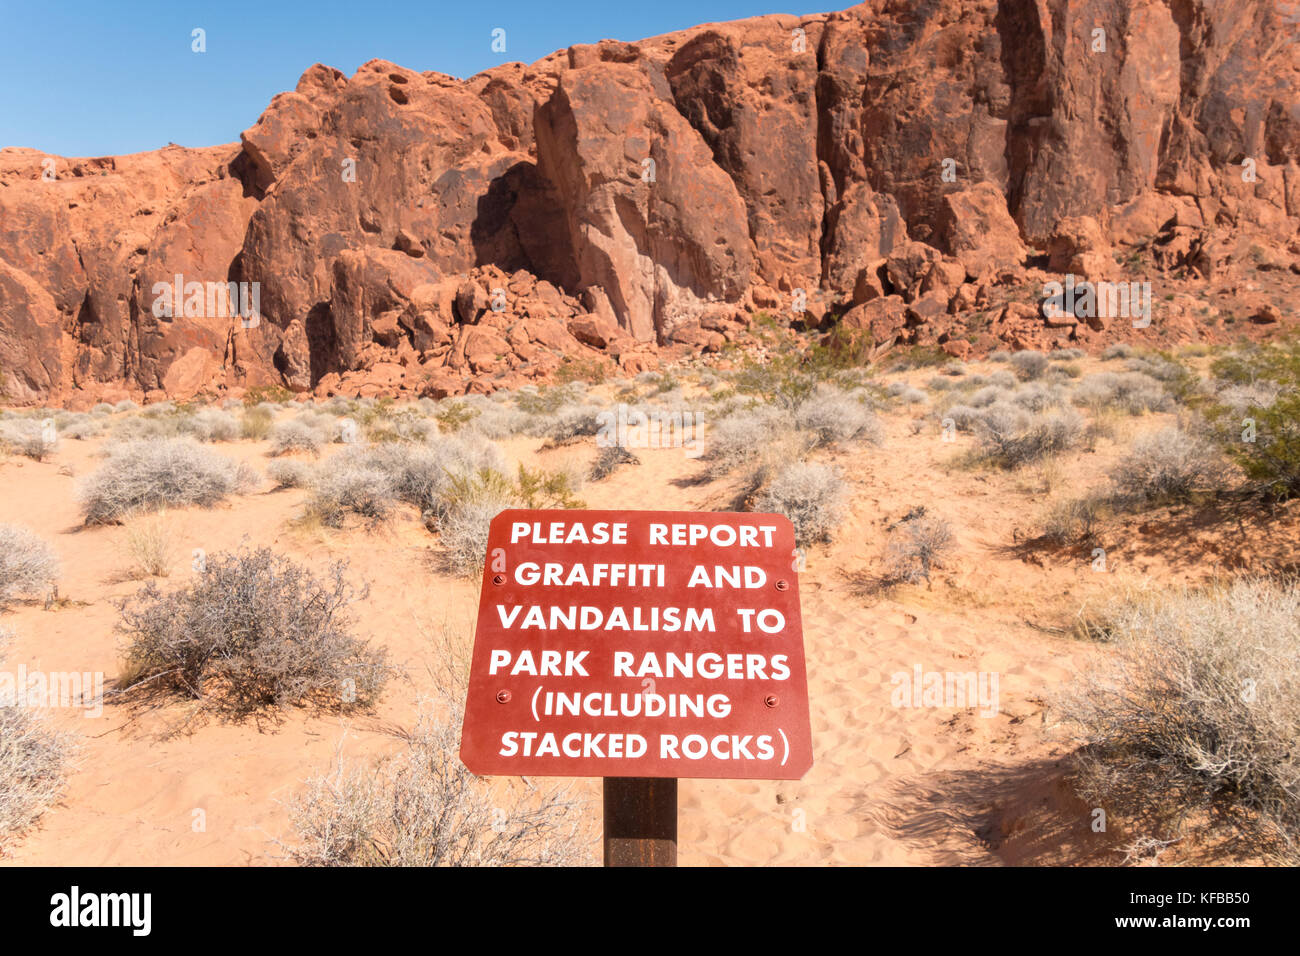 Vallée de Feu Park Nevada, signer avertissement pour signaler un graffiti et vandalisme à des rangers du parc, y compris les roches empilées. Banque D'Images